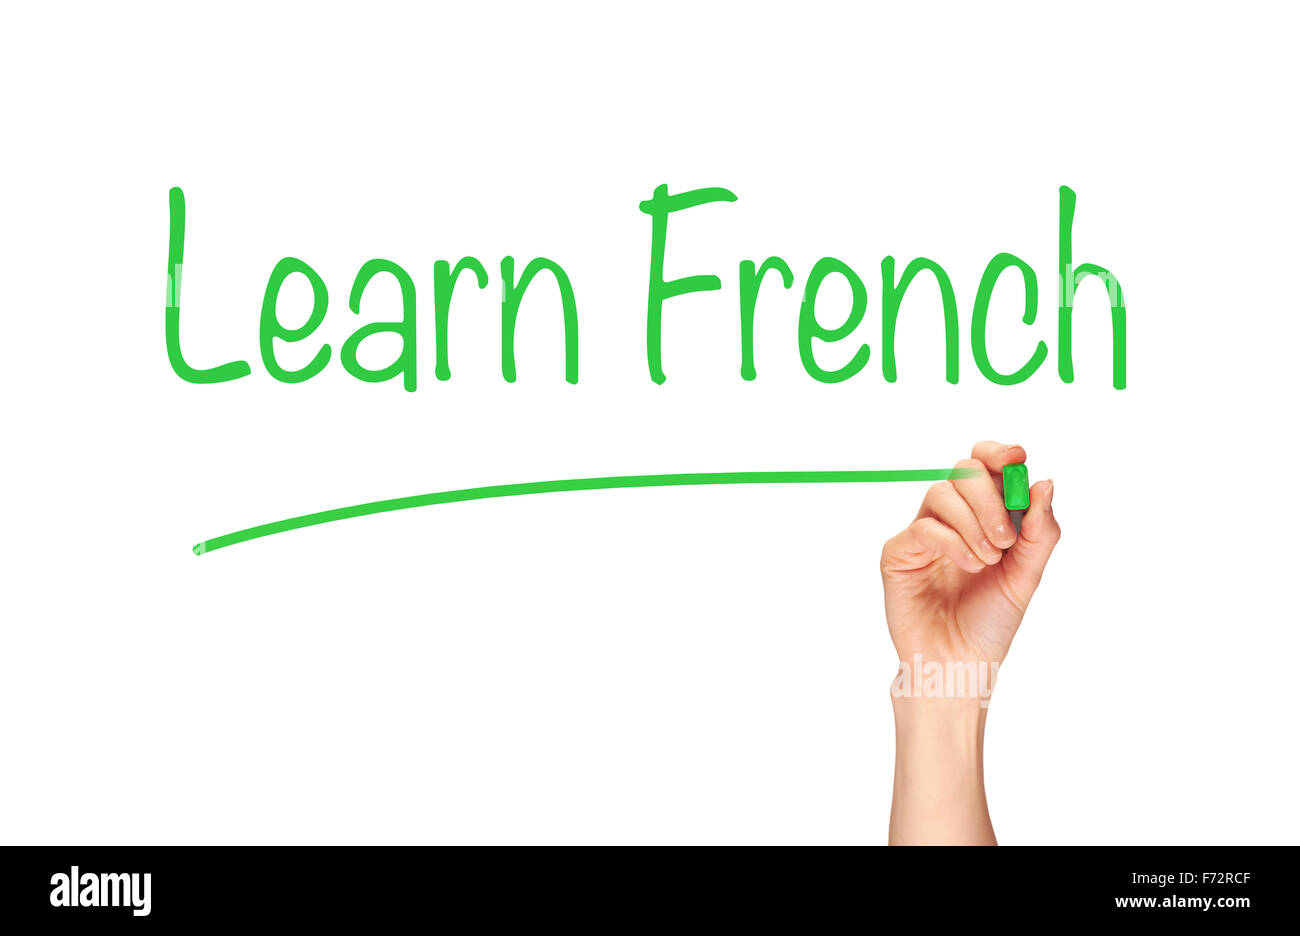 Die Hand einer Frau das Wort, Französisch lernen, auf eine klare Bildschirm zu schreiben. Stockfoto